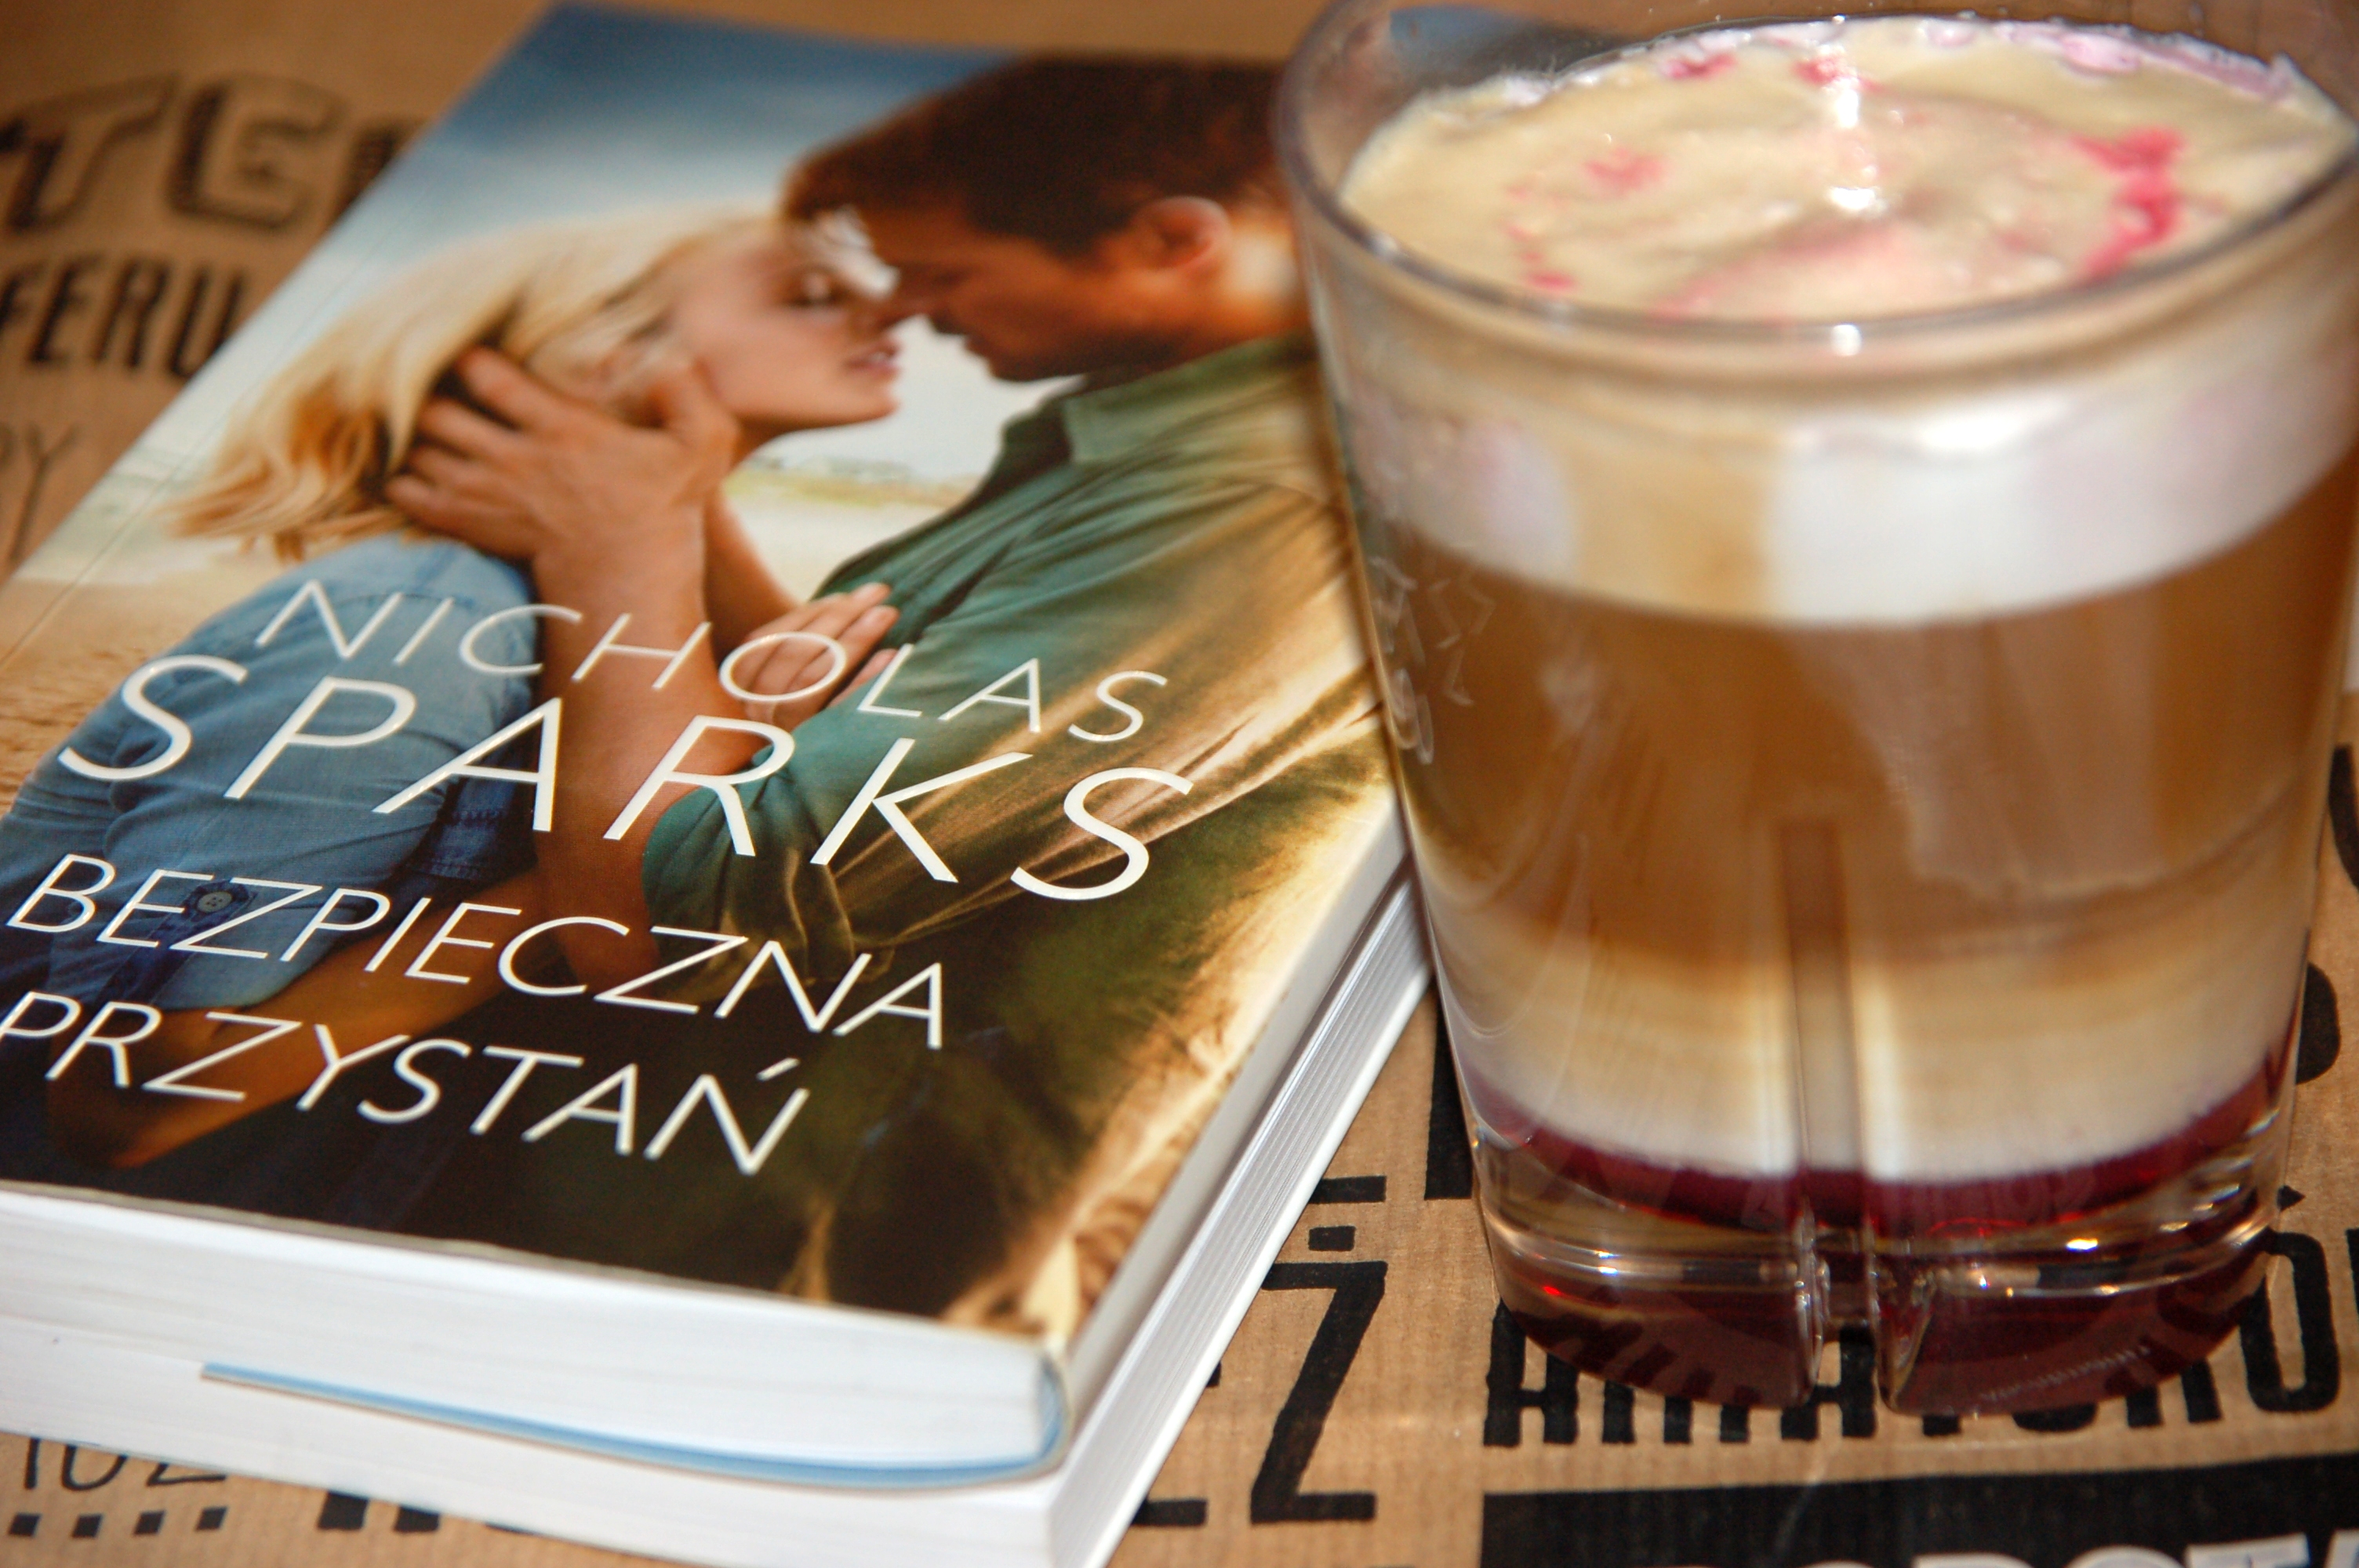 Kawa z syropem malinowym i „Bezpieczna przystań” Nicholasa Sparksa. – Przepisy